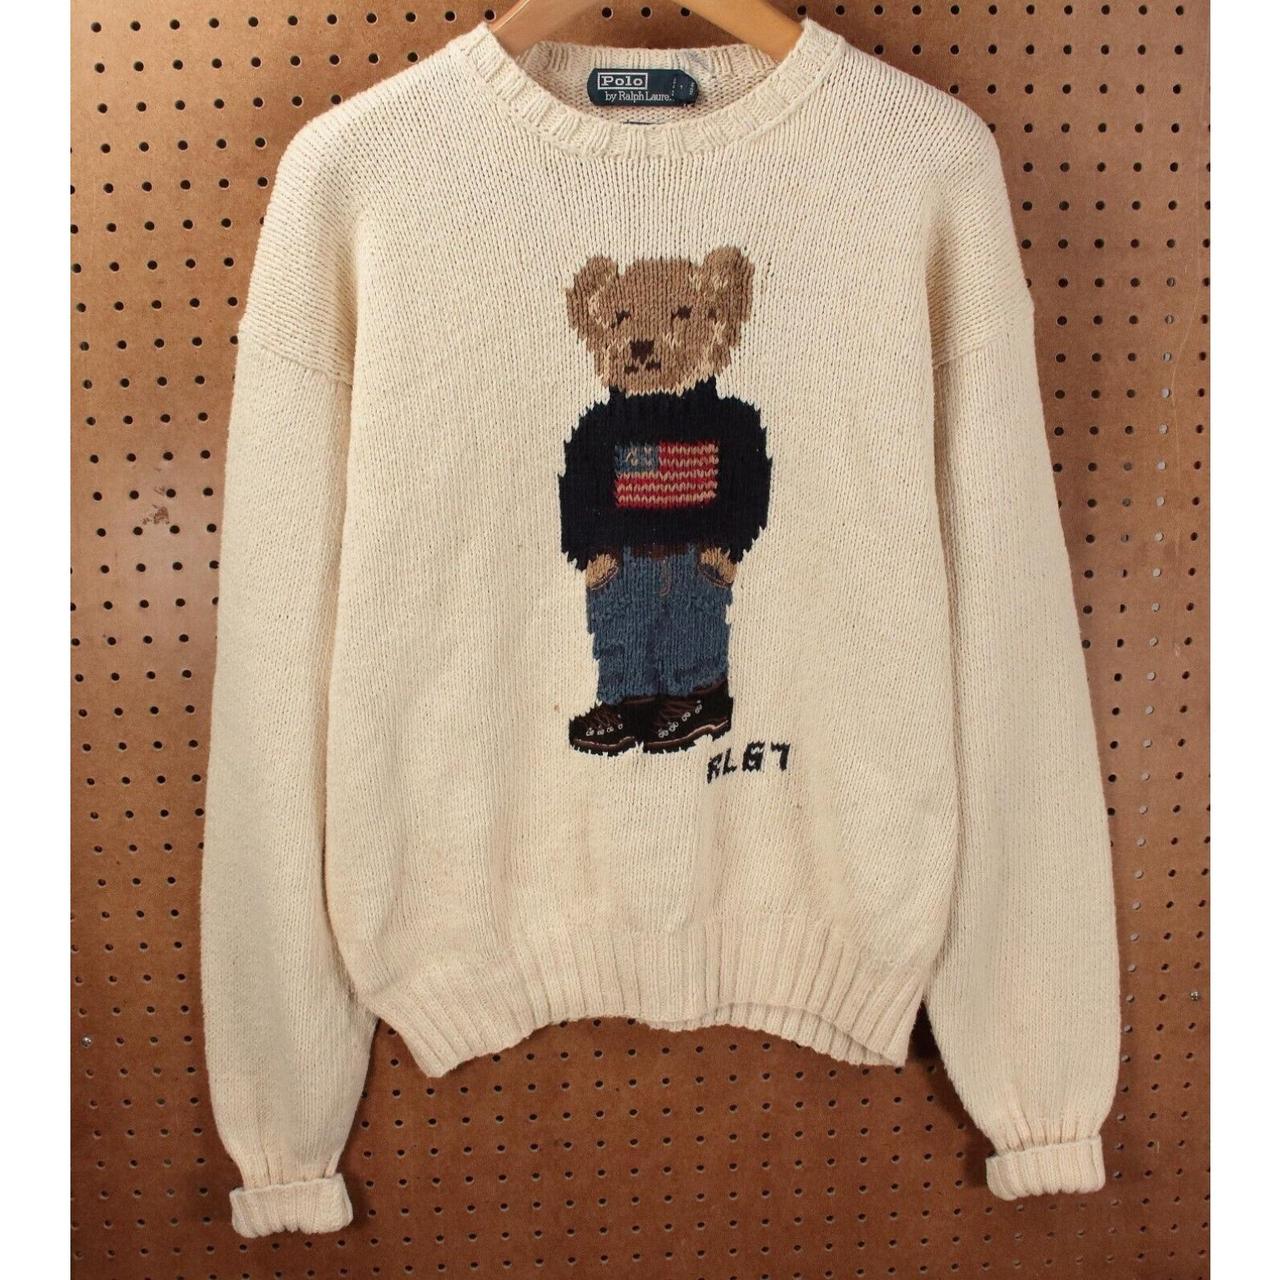 vtg Polo Ralph Lauren bear sweater LARGE vtg 90s 00s... - Depop